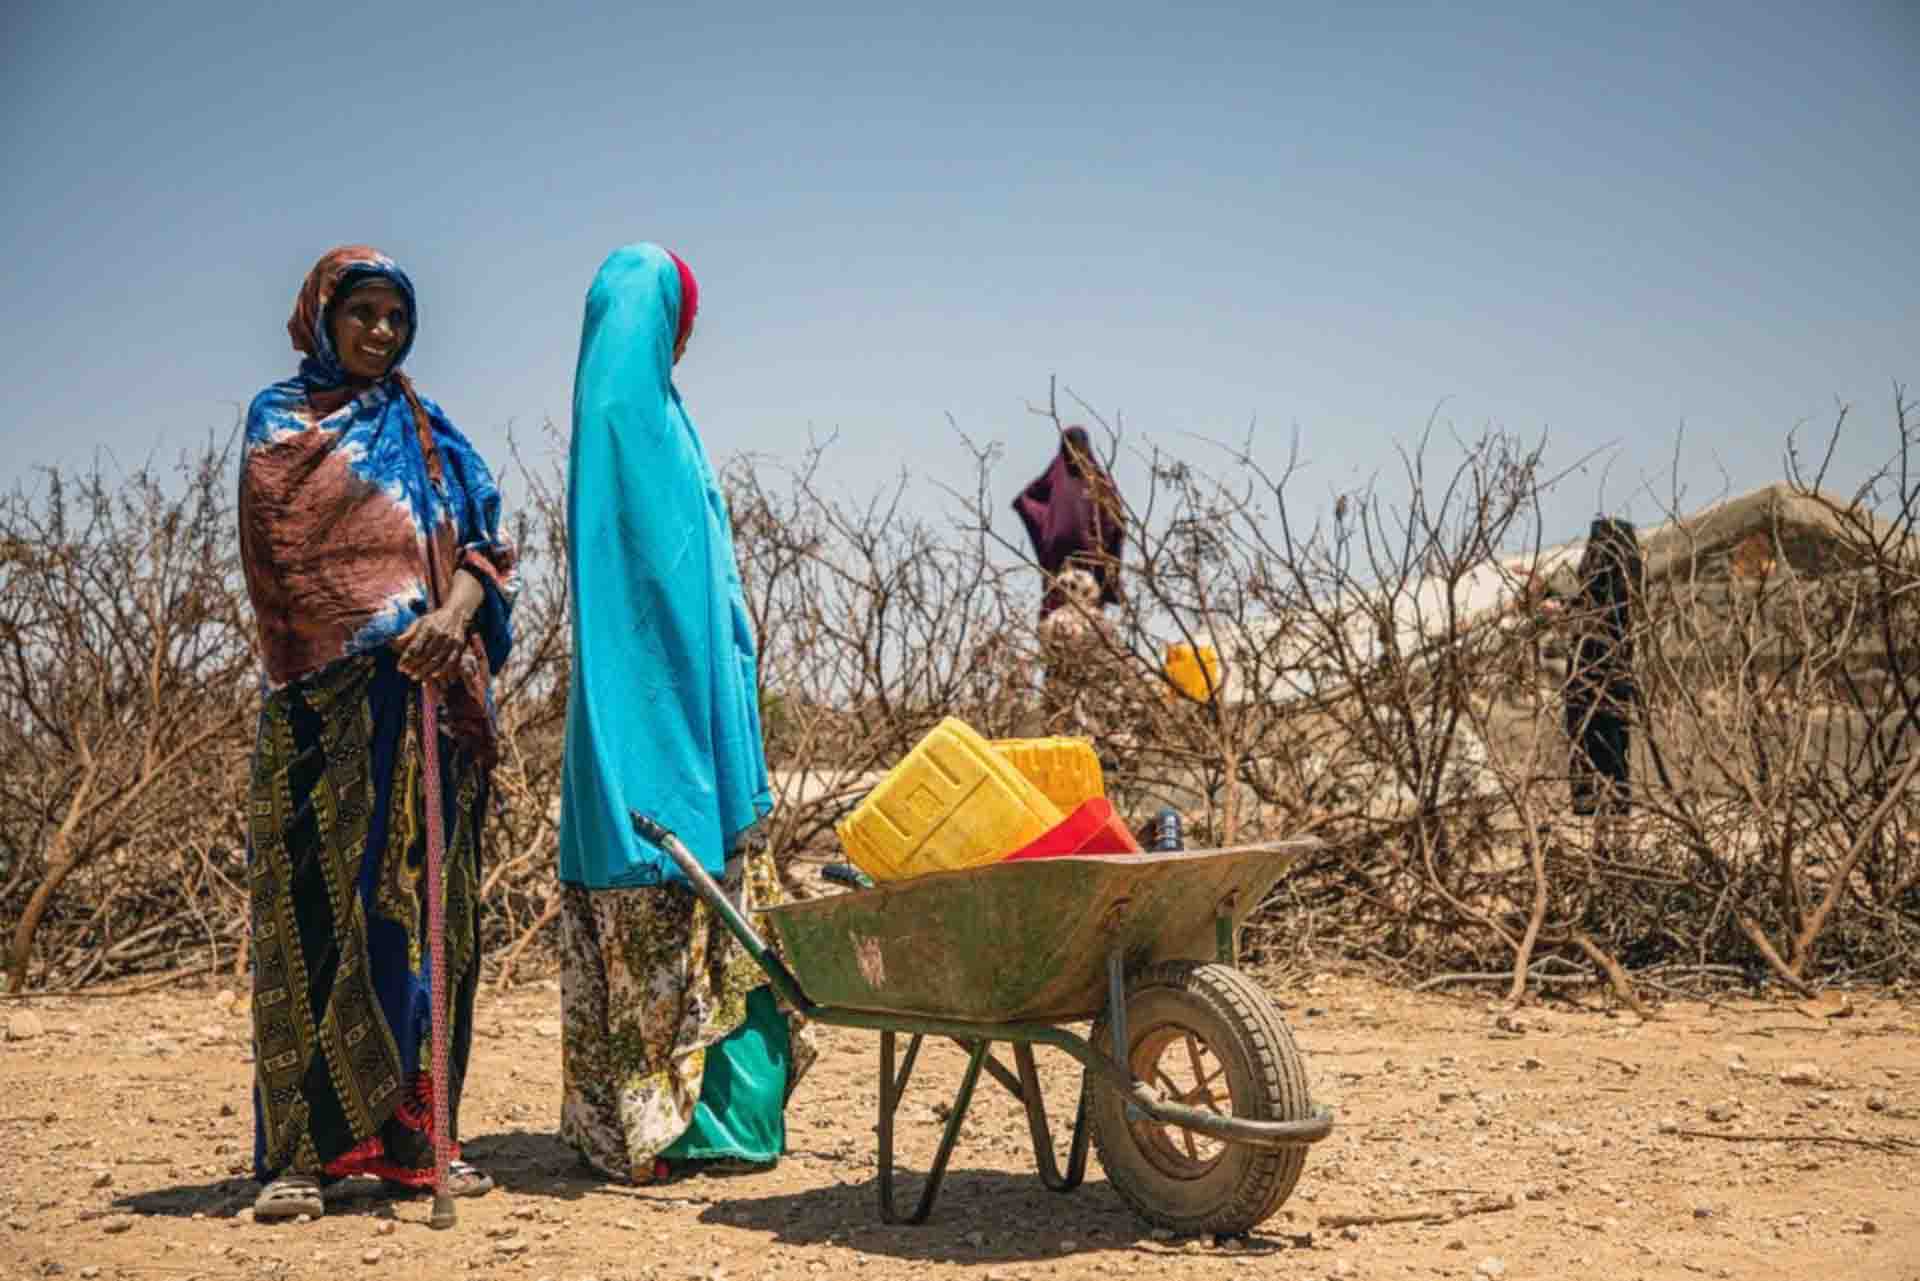 Dos mujeres en un territorio árido. Los desastres causaron casi 24 millones de desplazamientos internos en 2021 / Foto: EP